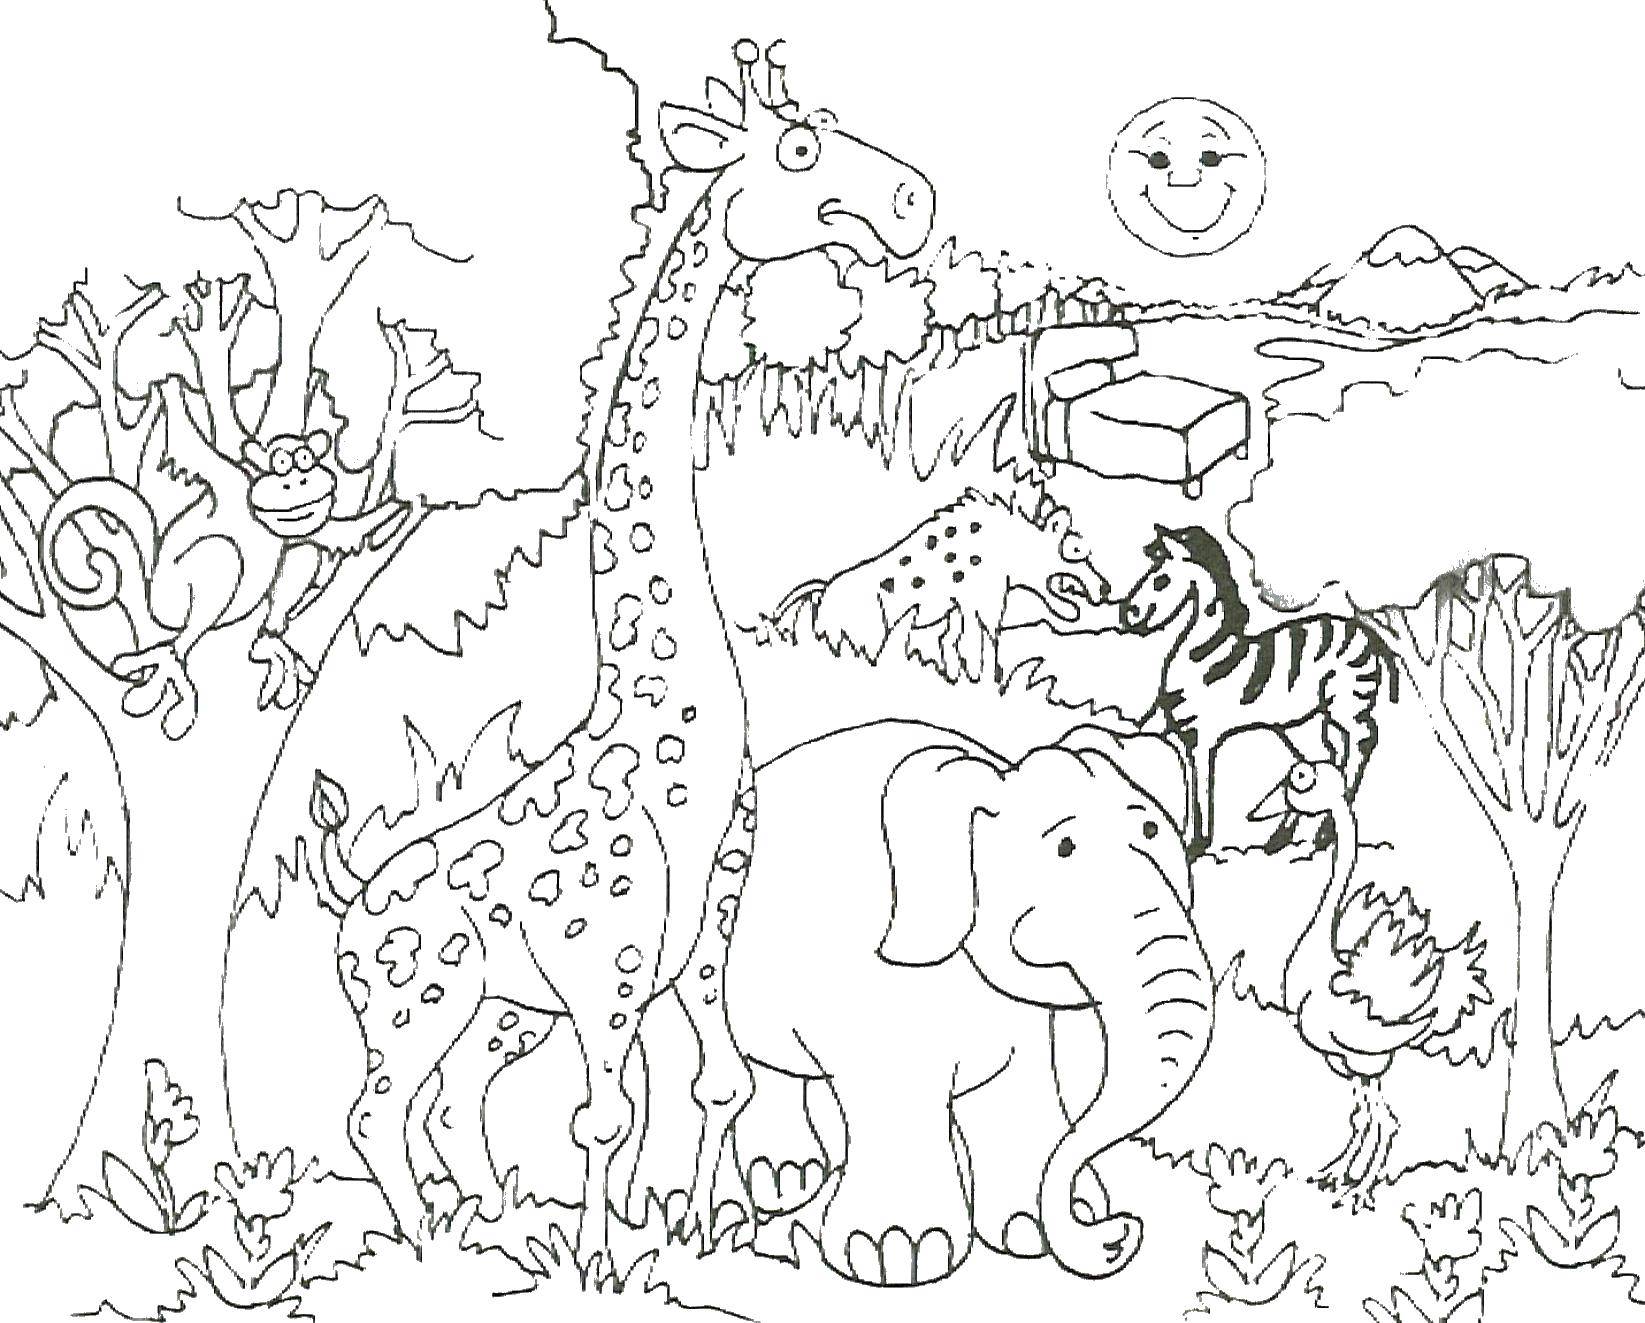 Название: Раскраска Слон, жираф, страус, обезьяна, зебра. Категория: животные. Теги: слон, жираф, страус, обезьяна, зебра.